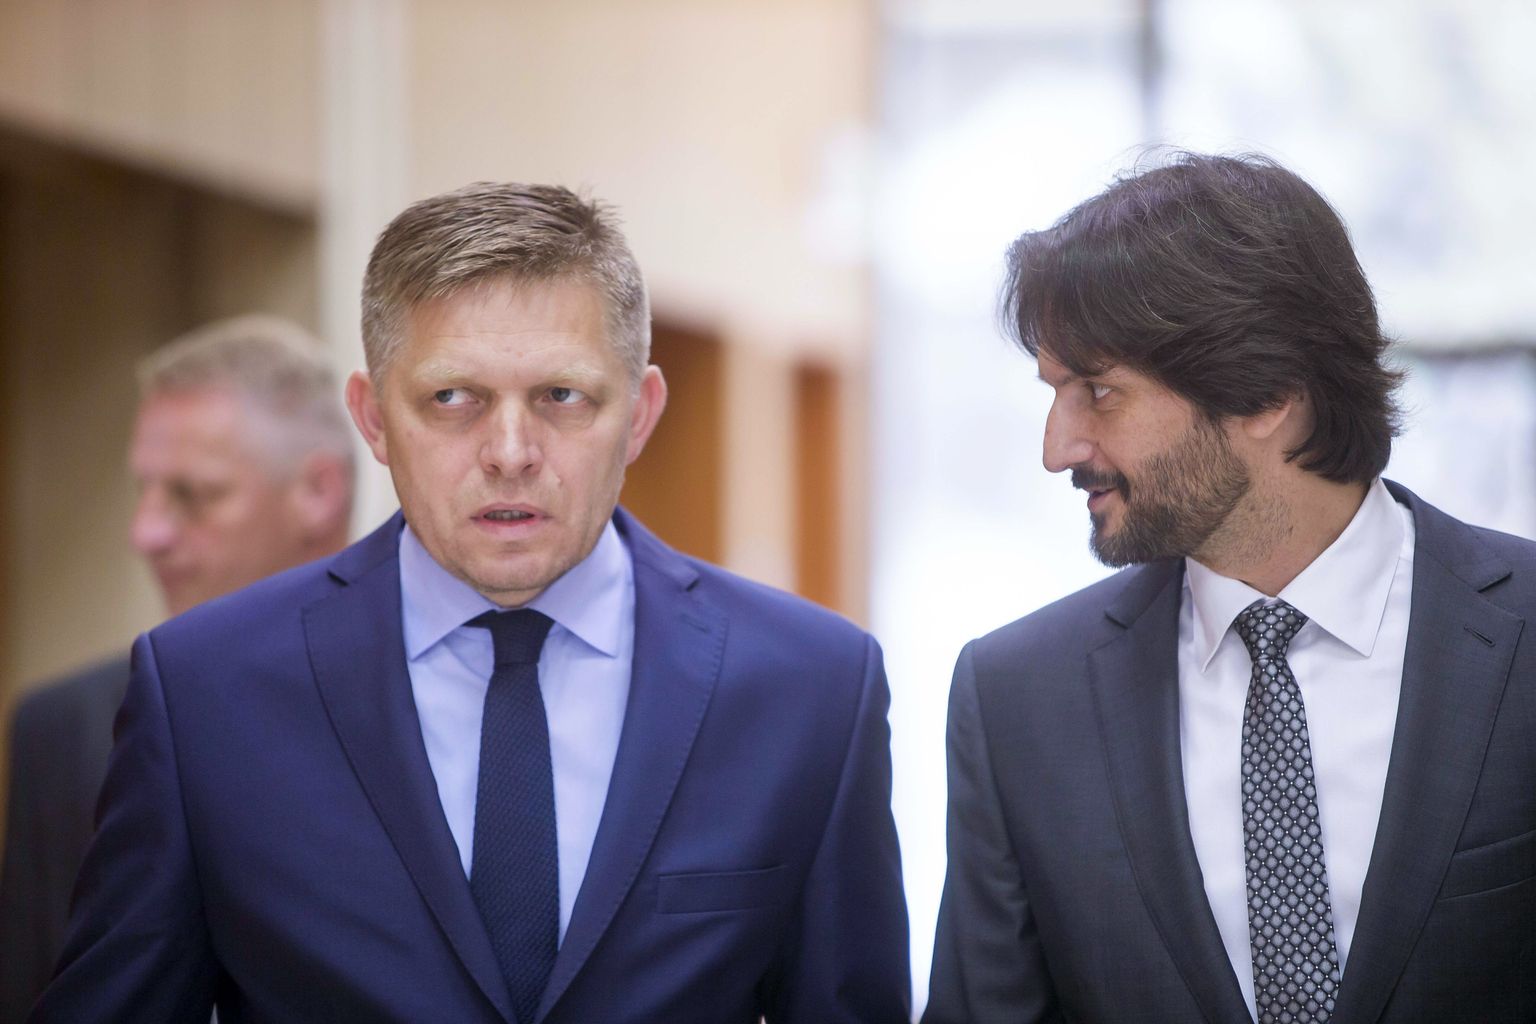 Slovakkia kuuma poliitikasuve kesksed tegelased: peaminister Robert Fico (vasakul)ja siseminister Robert Kaliňák.